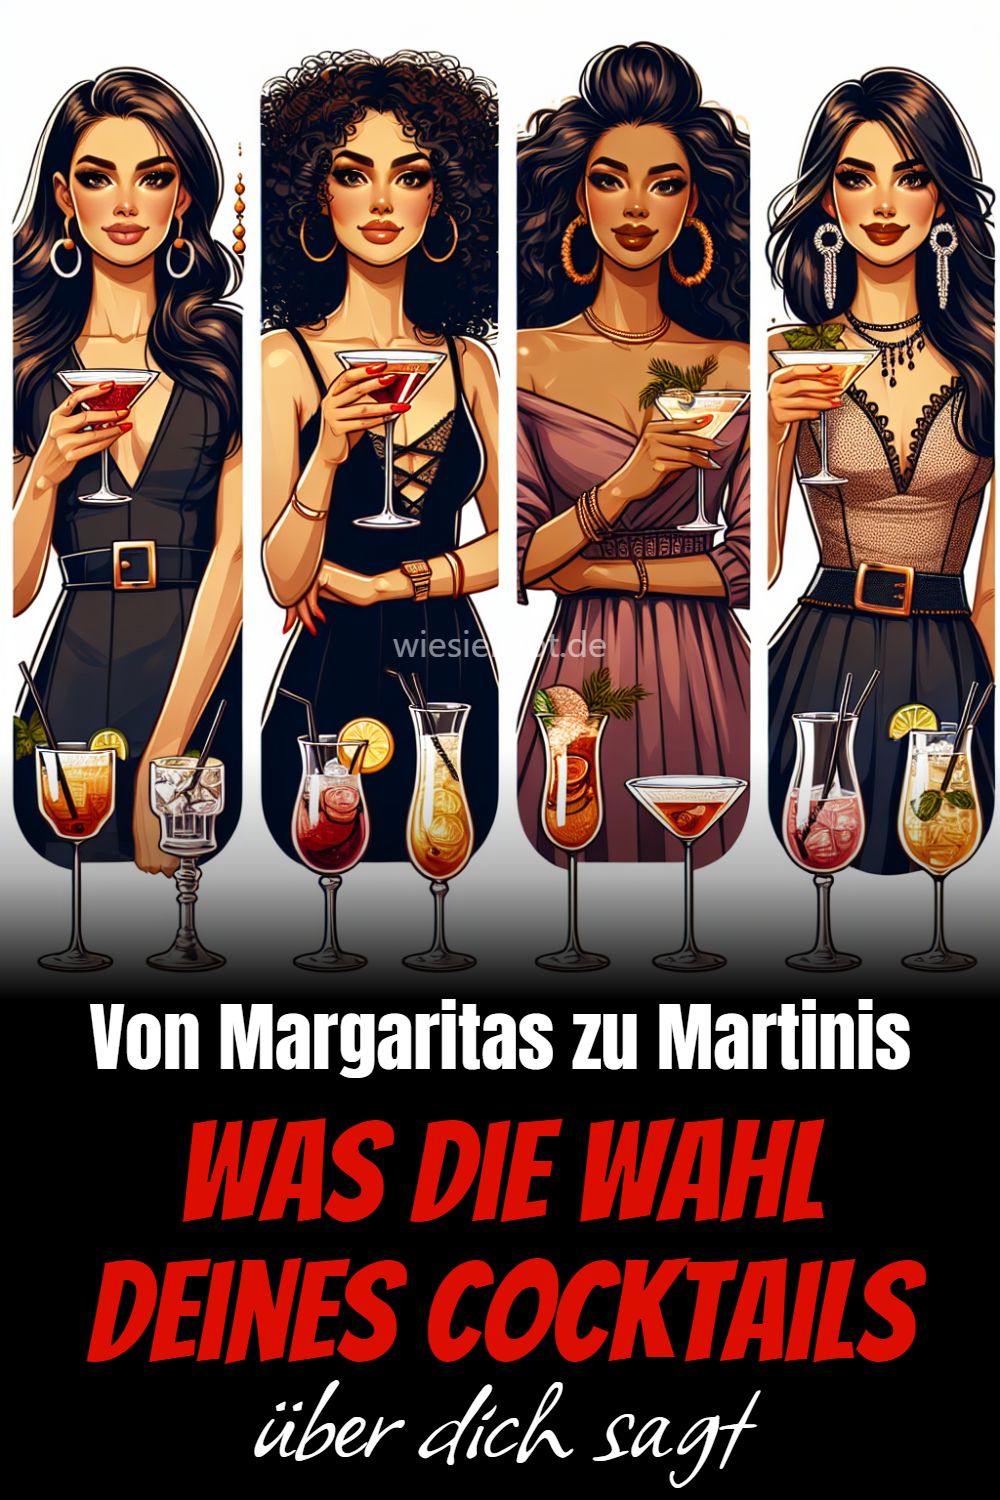 Was die Wahl deines Cocktails Von Margaritas zu Martinis über dich sagt